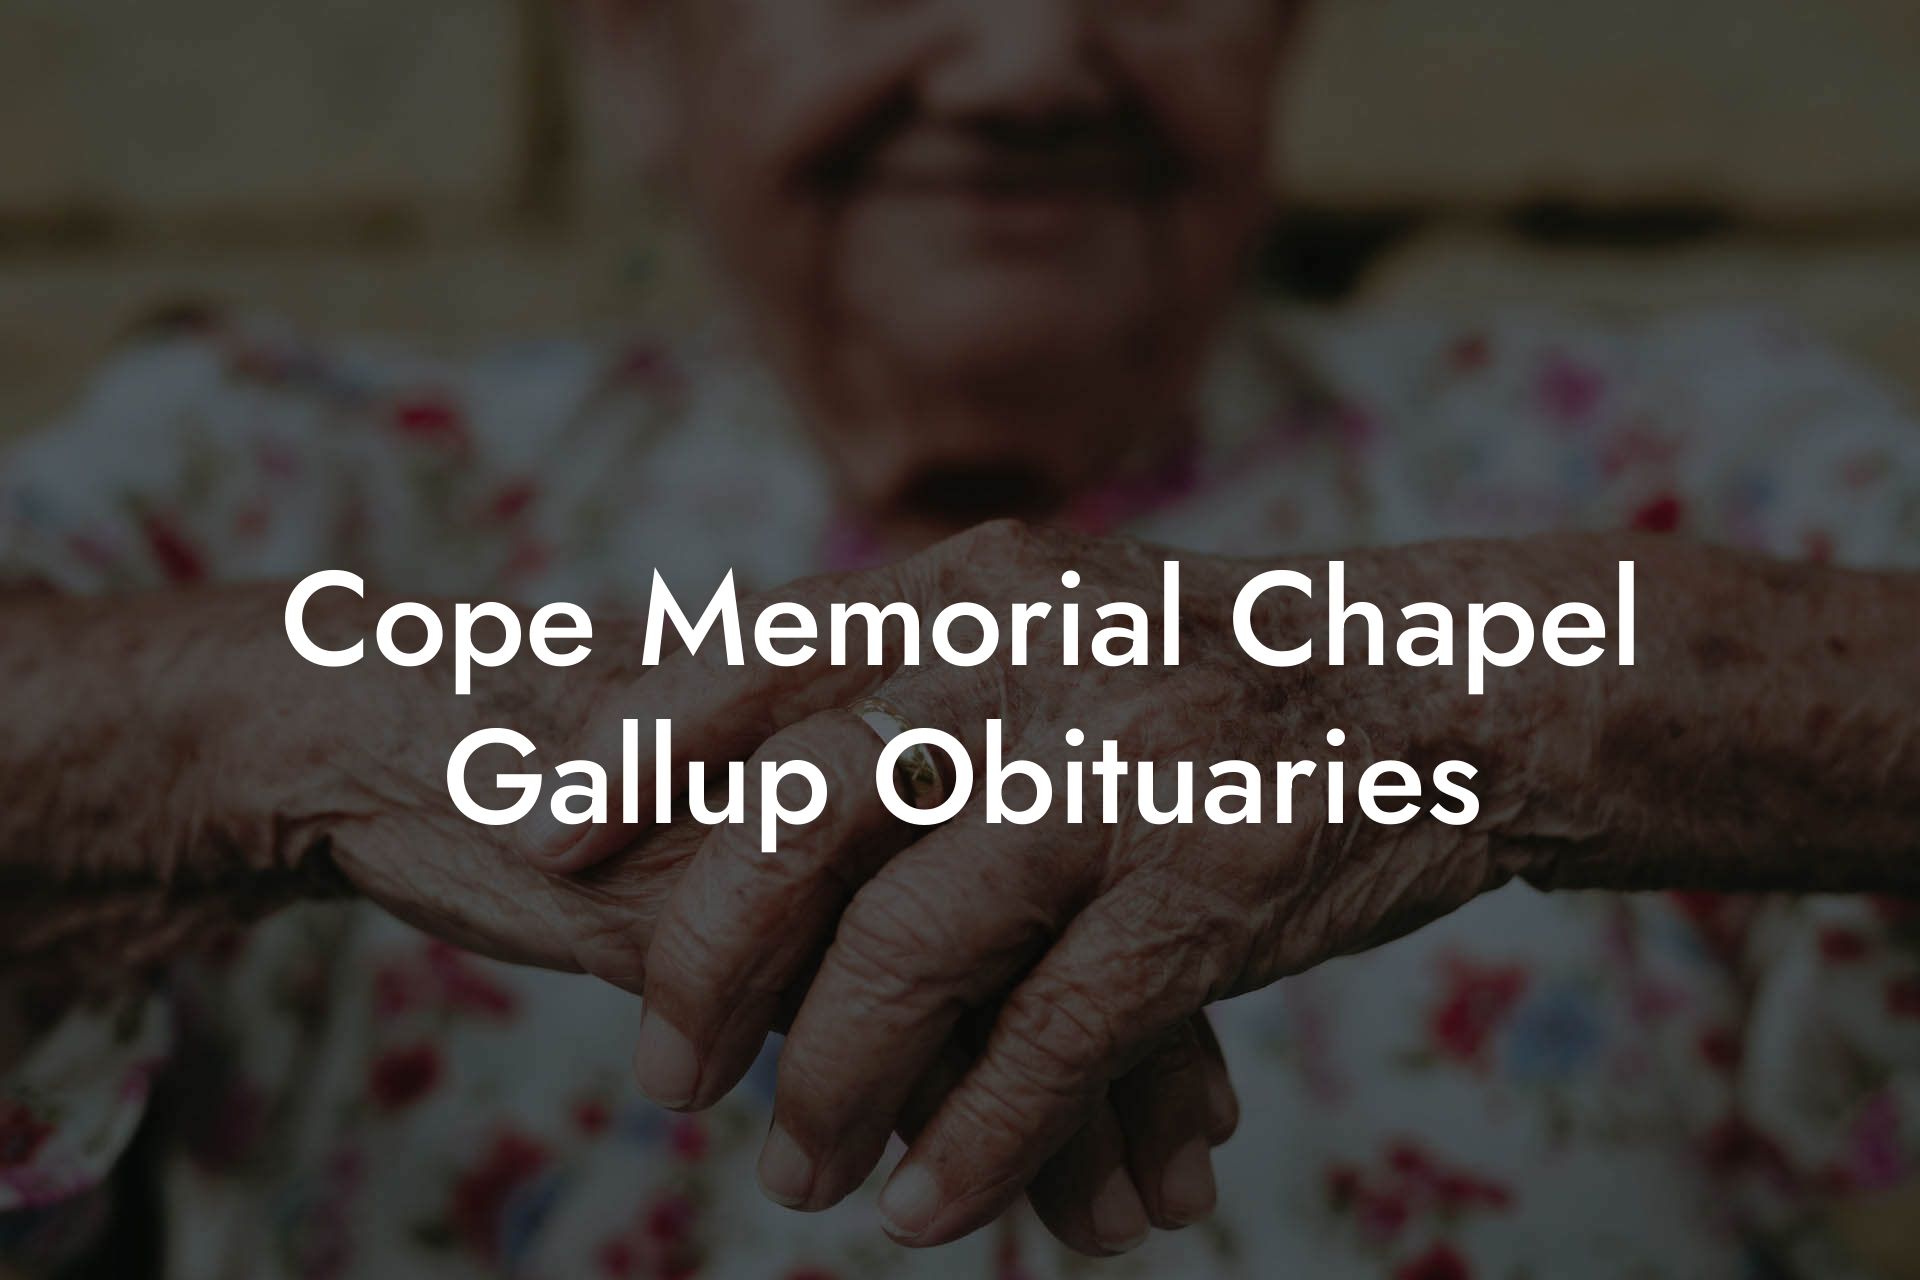 Cope Memorial Chapel, Gallup Obituaries